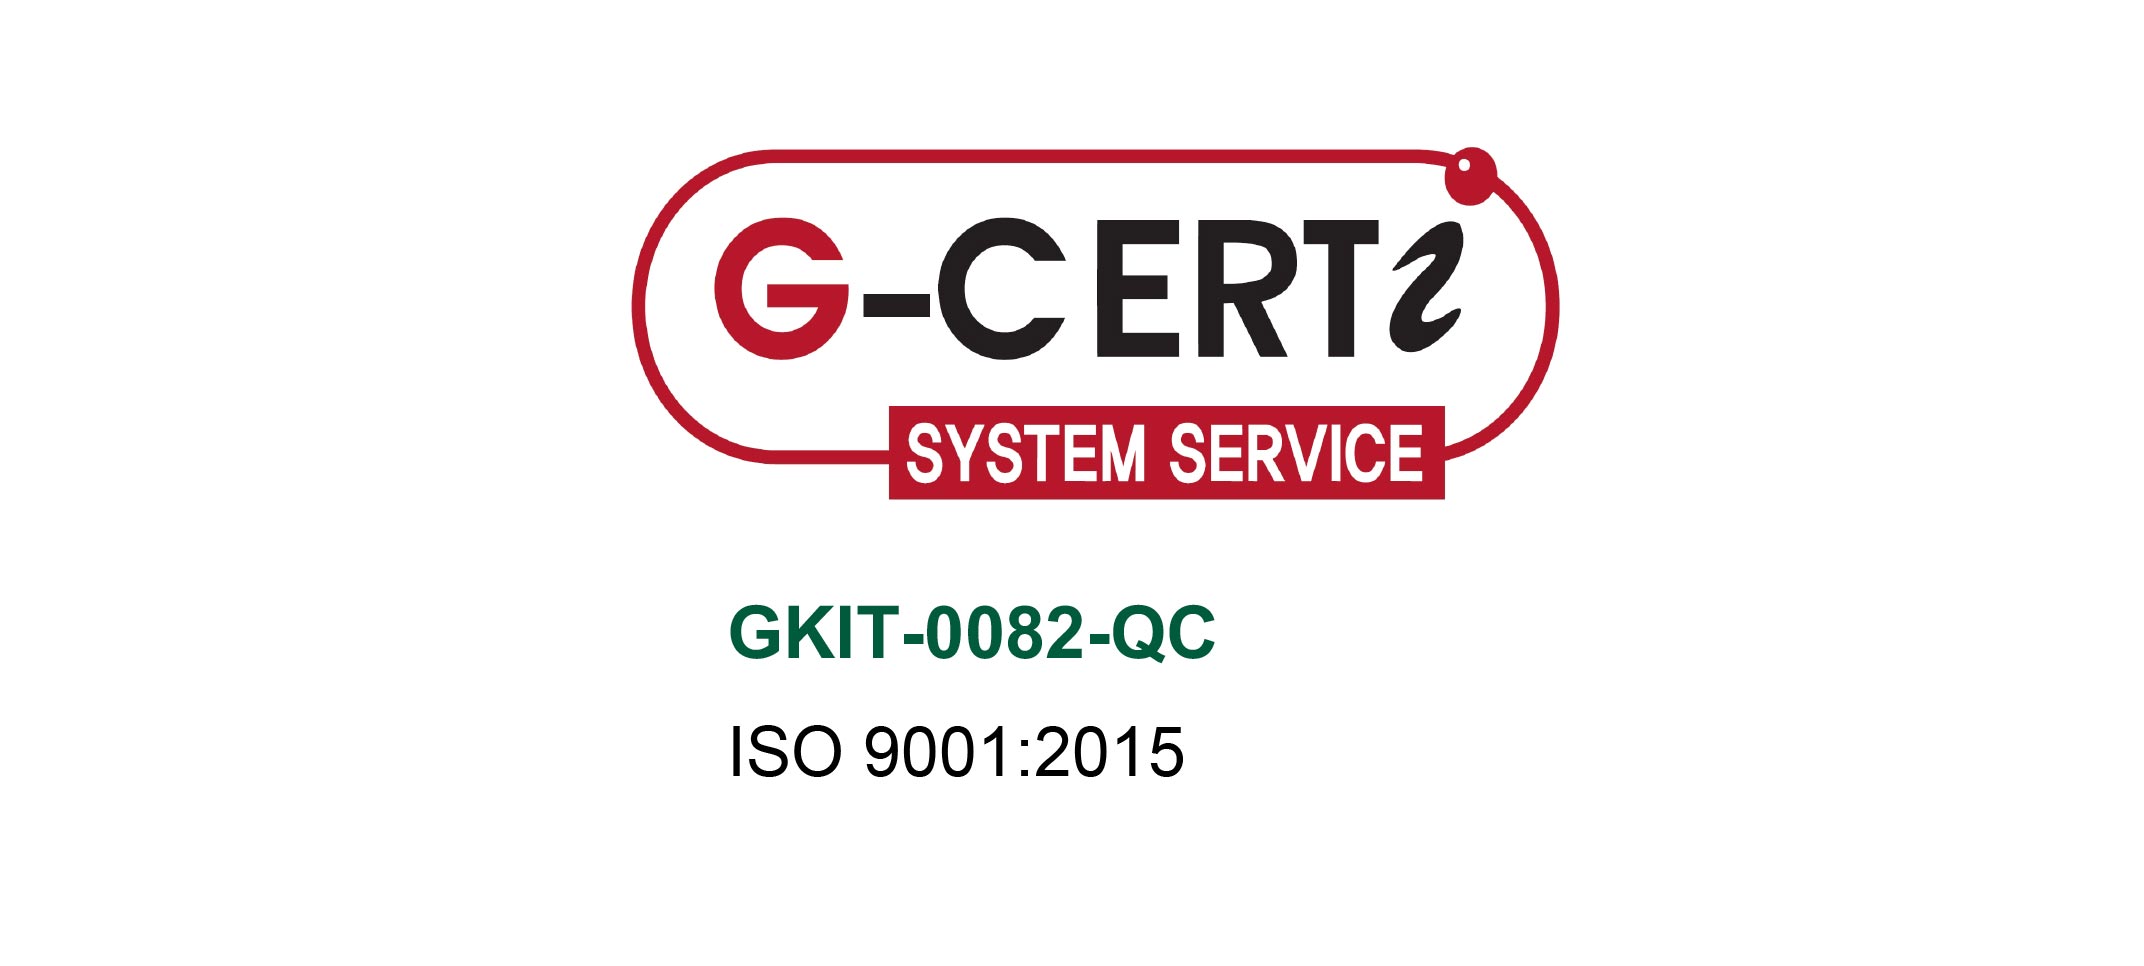 Certificazione di qualità ISO 9001 - Formazione 4.0 | Glacom